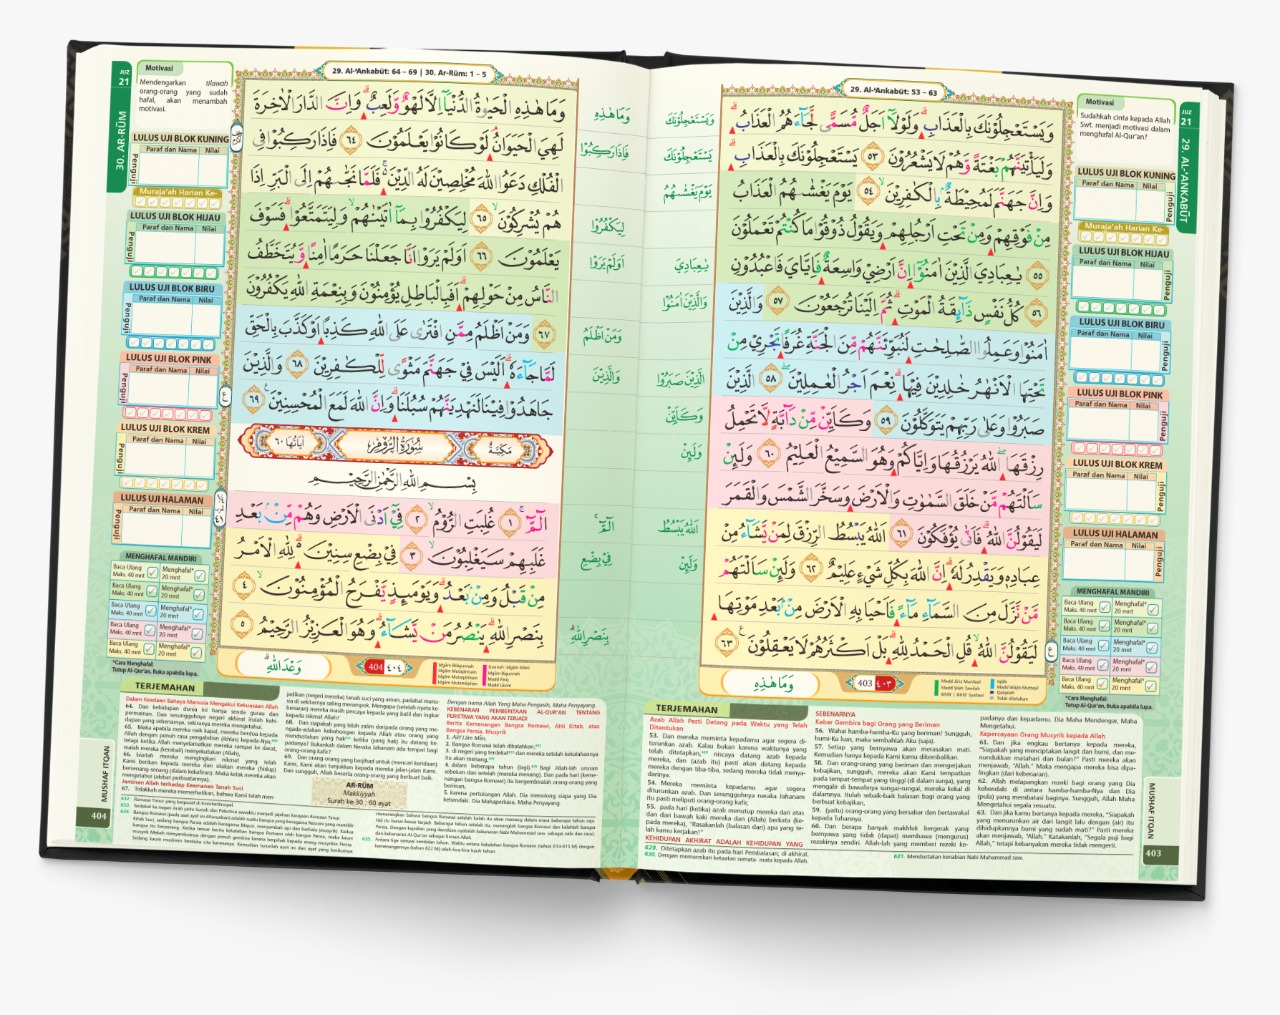 Al-Quran PELAJAR ITQAN (A5)